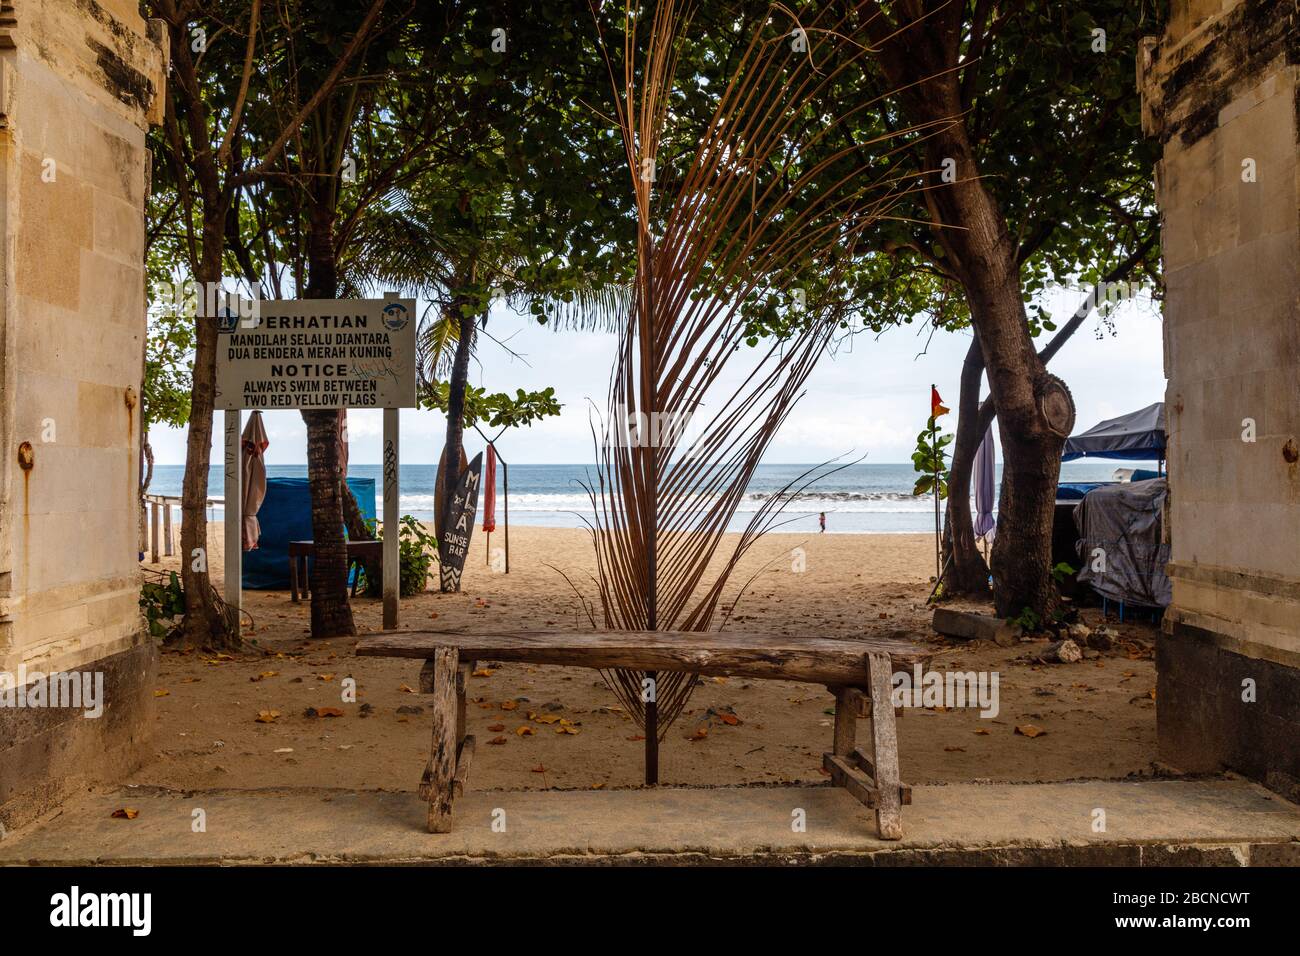 05 avril 2020. La destination touristique populaire vide Kuta plage fermée en raison de la quarantaine du virus corona. Badung, Bali, Indonésie. Banque D'Images